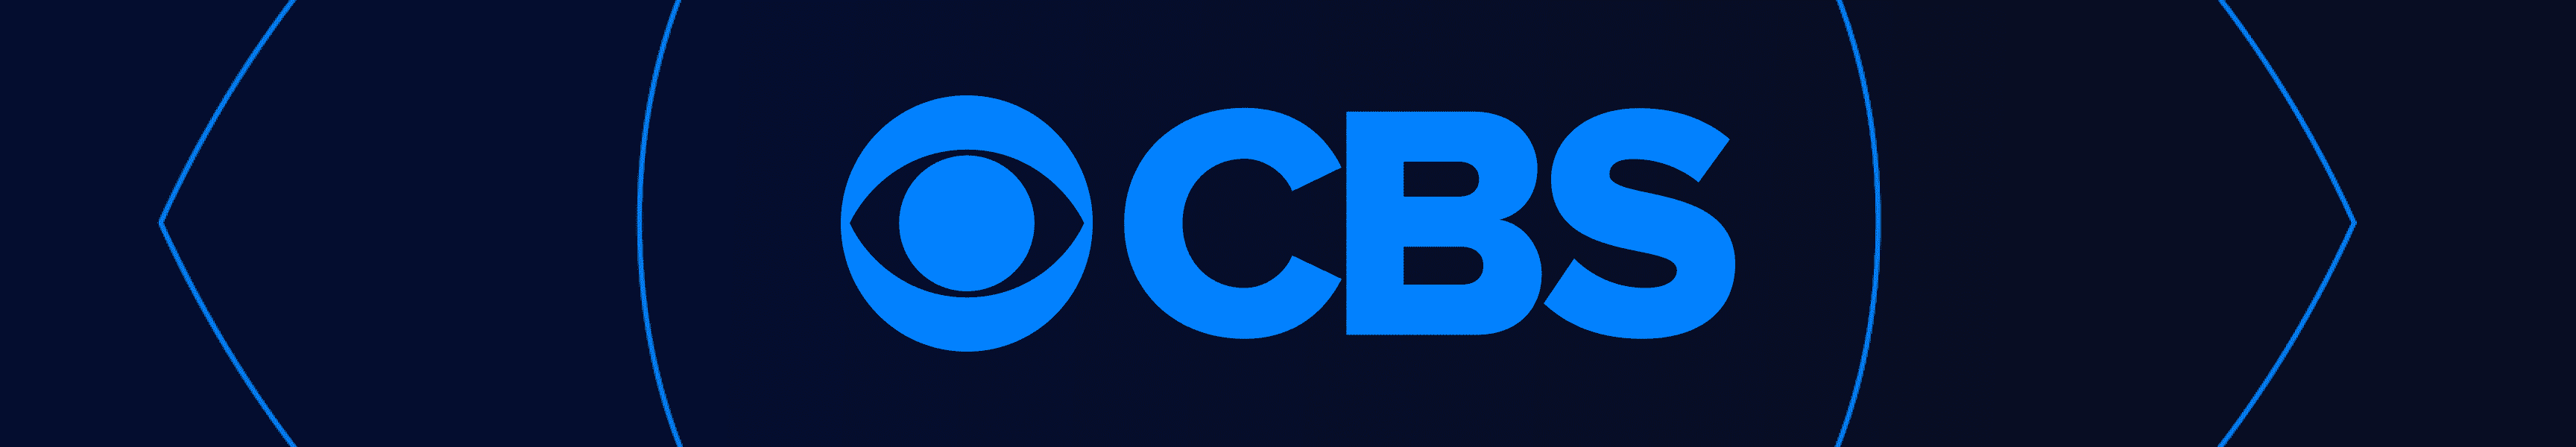 CBS Unterhaltung Logo